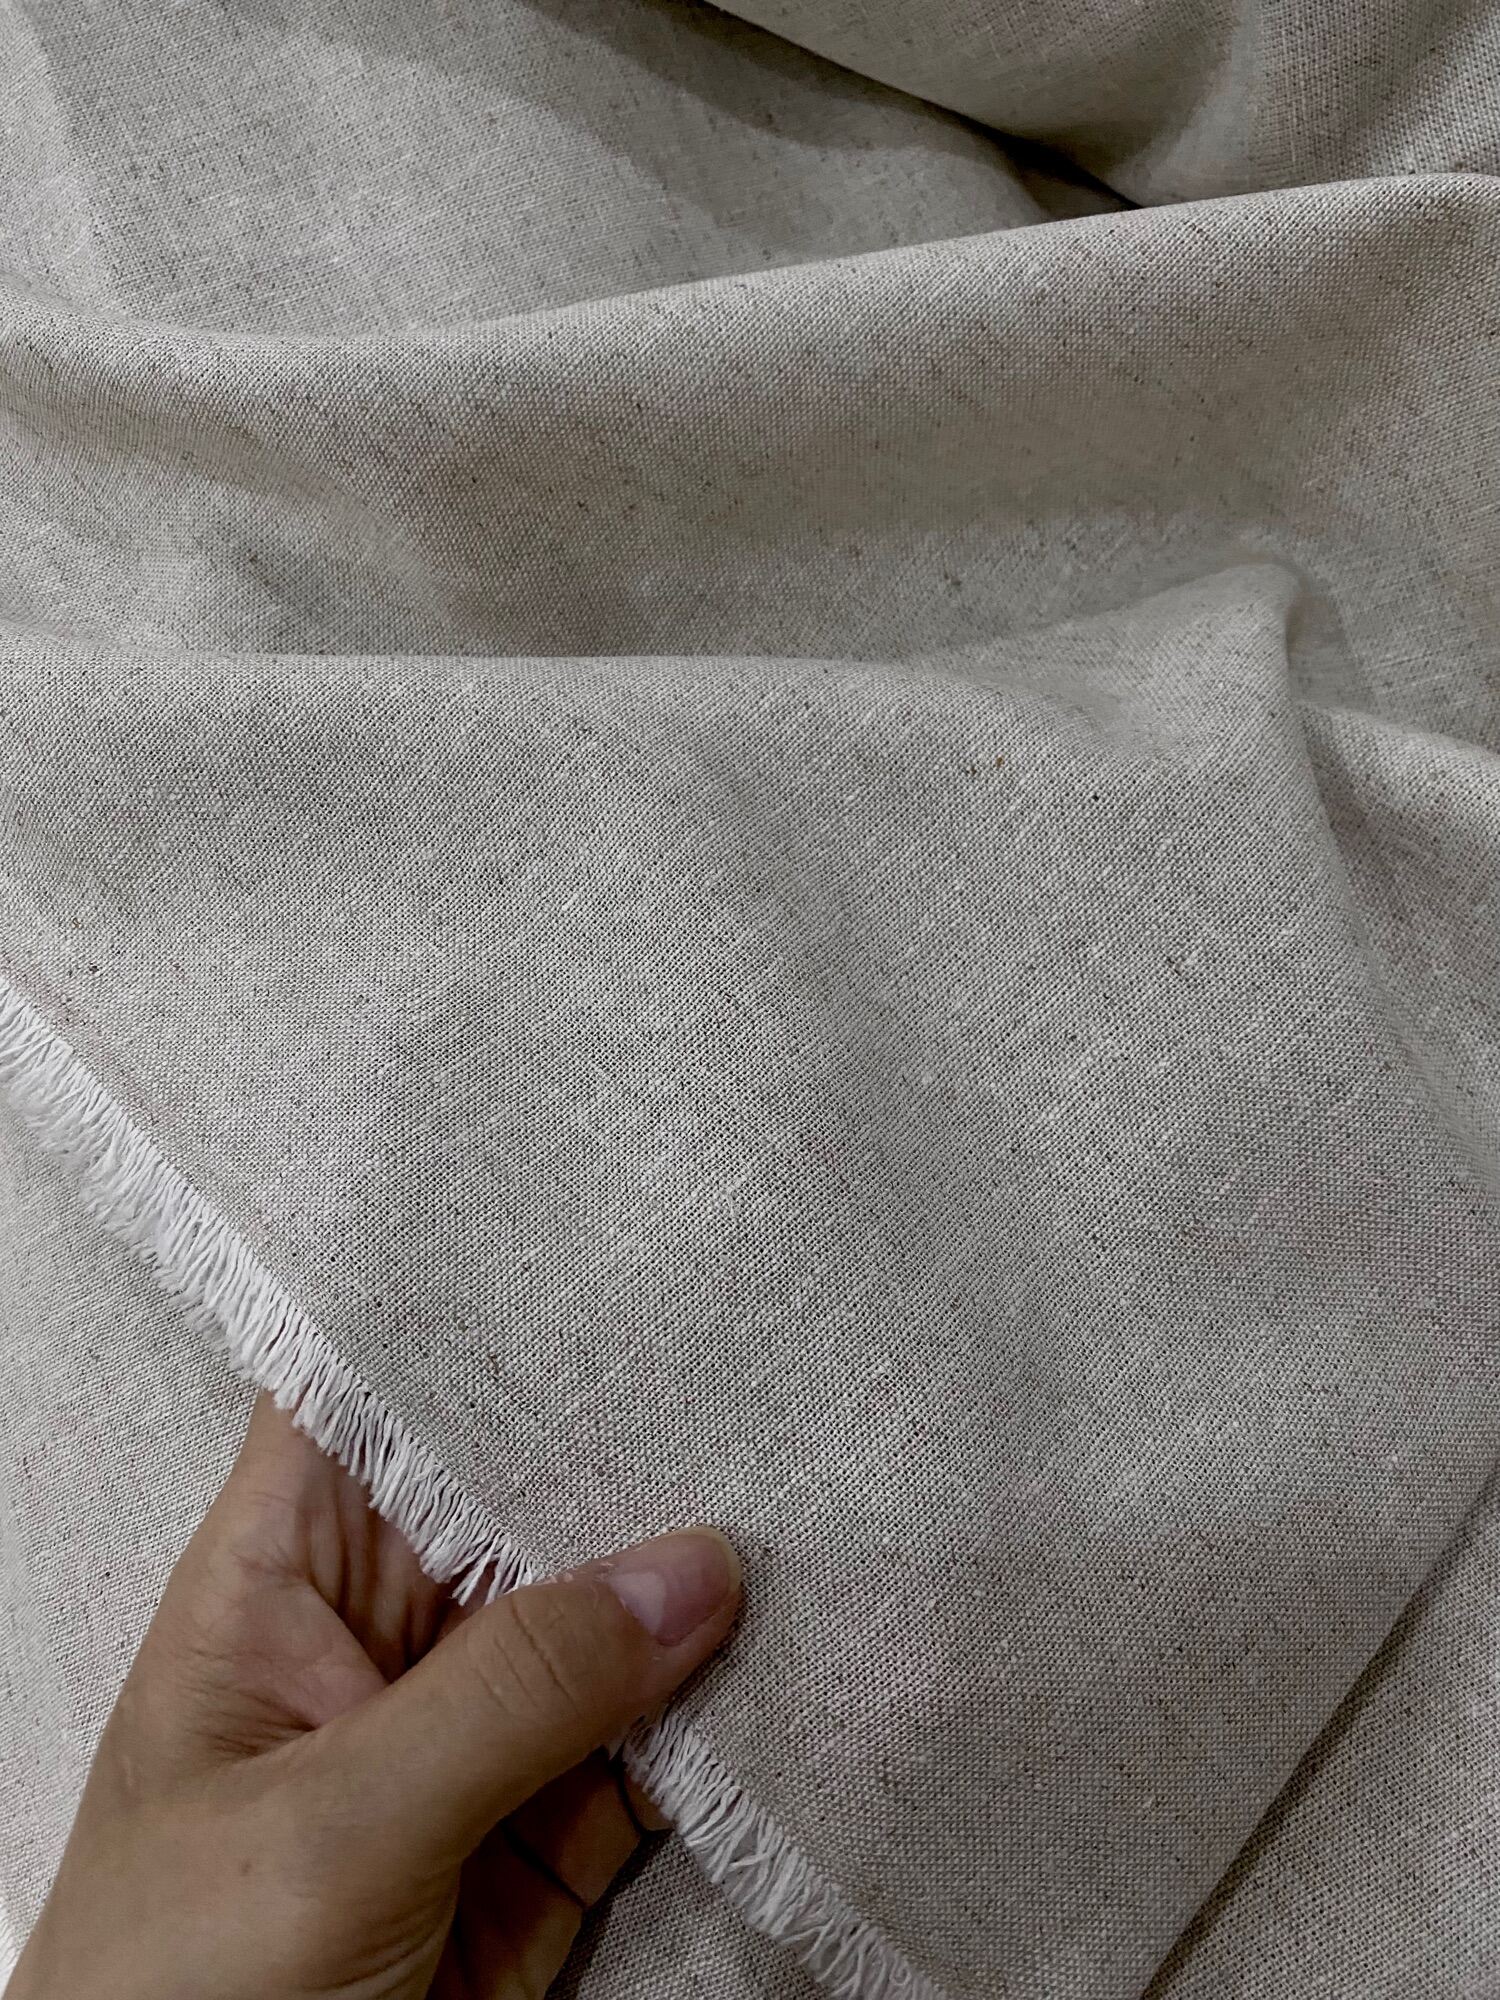 [HCM] Vải Linen Bột kem mộc siêu mềm rũ may đầm quần ko lót nhé - Khổ vải 1m40 giá 70k/m